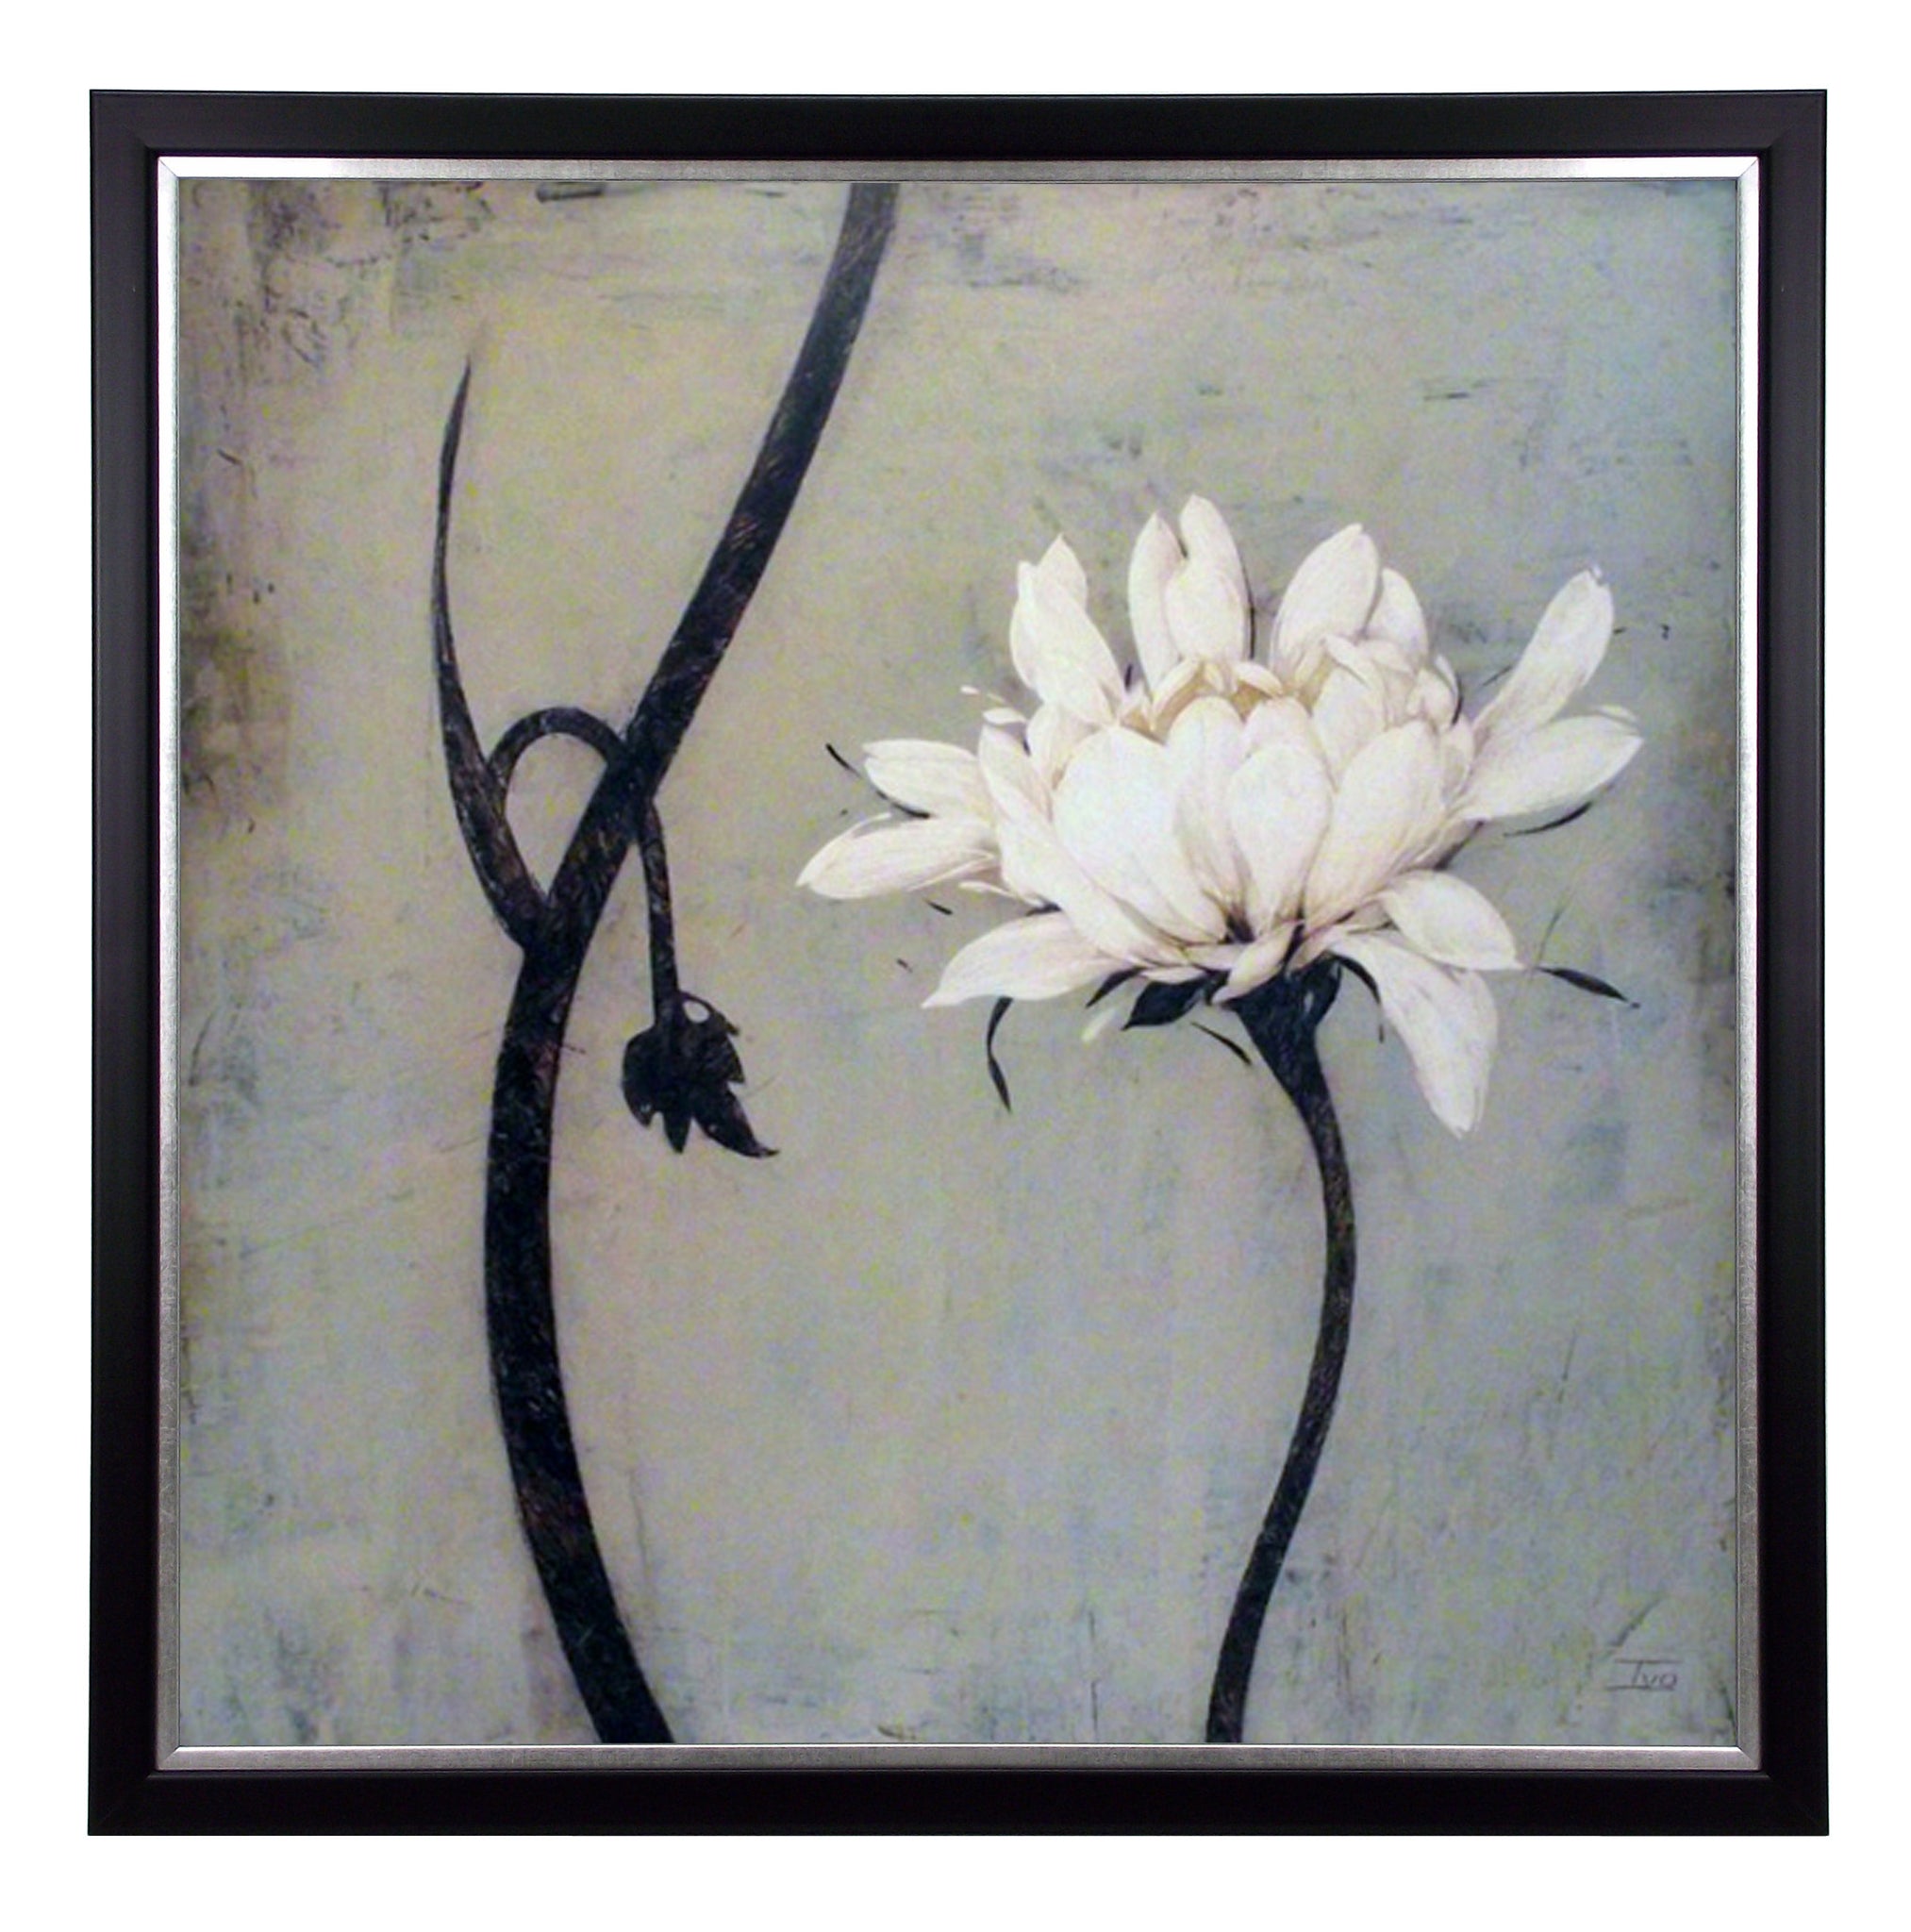 Obraz - Biały kwiat i łodygi - reprodukcja A5256 w ramie 70x70 cm